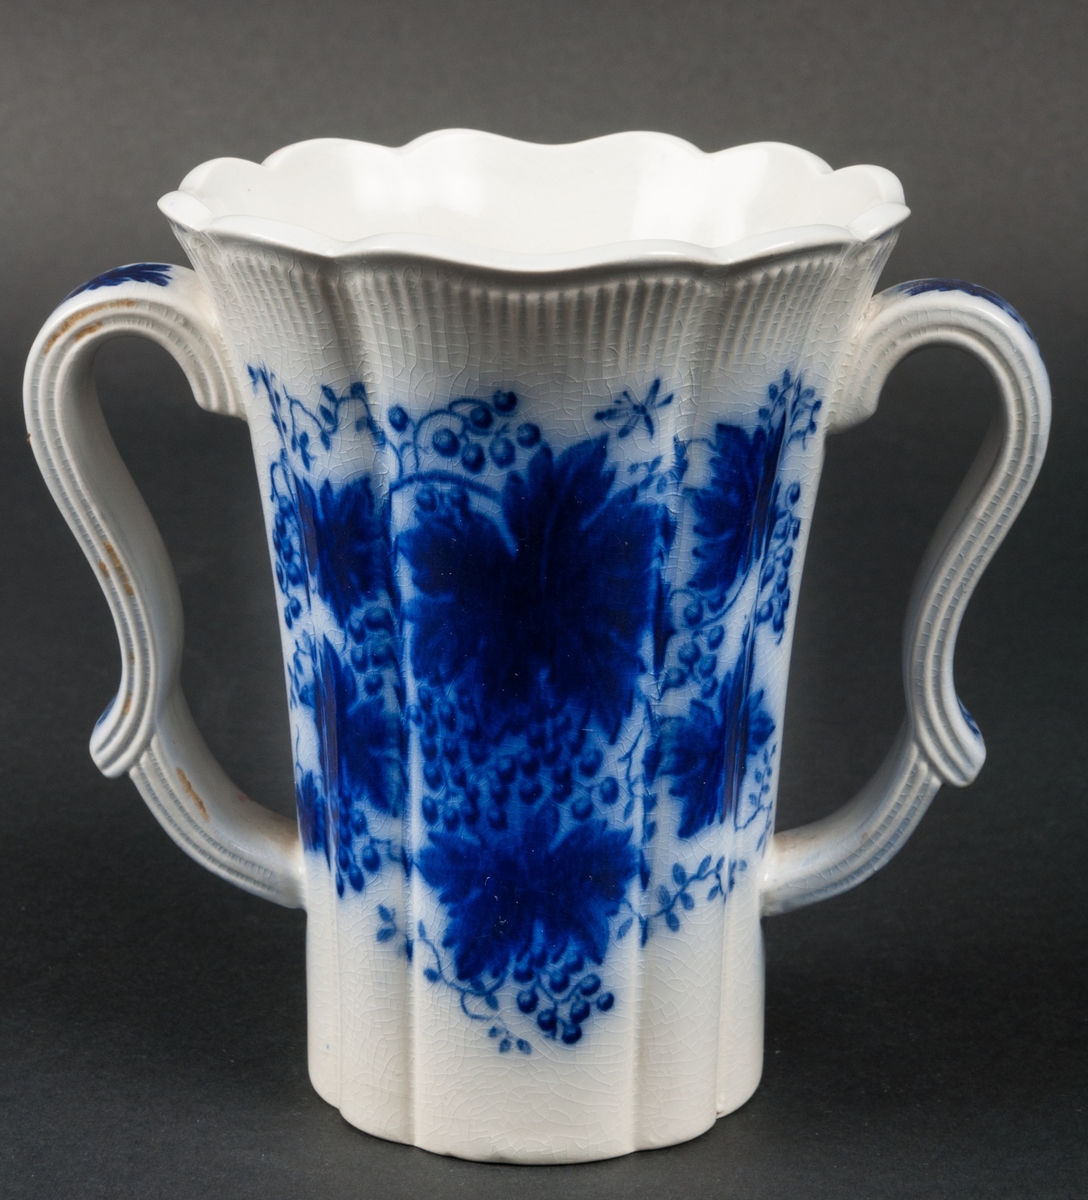 Vas, formgiven av Arthur Percy för Gefle Porslinsfabrik. Trattformad med vågig kant och buk. Två profilerade handtag. Dekor: Vinranka, blå.